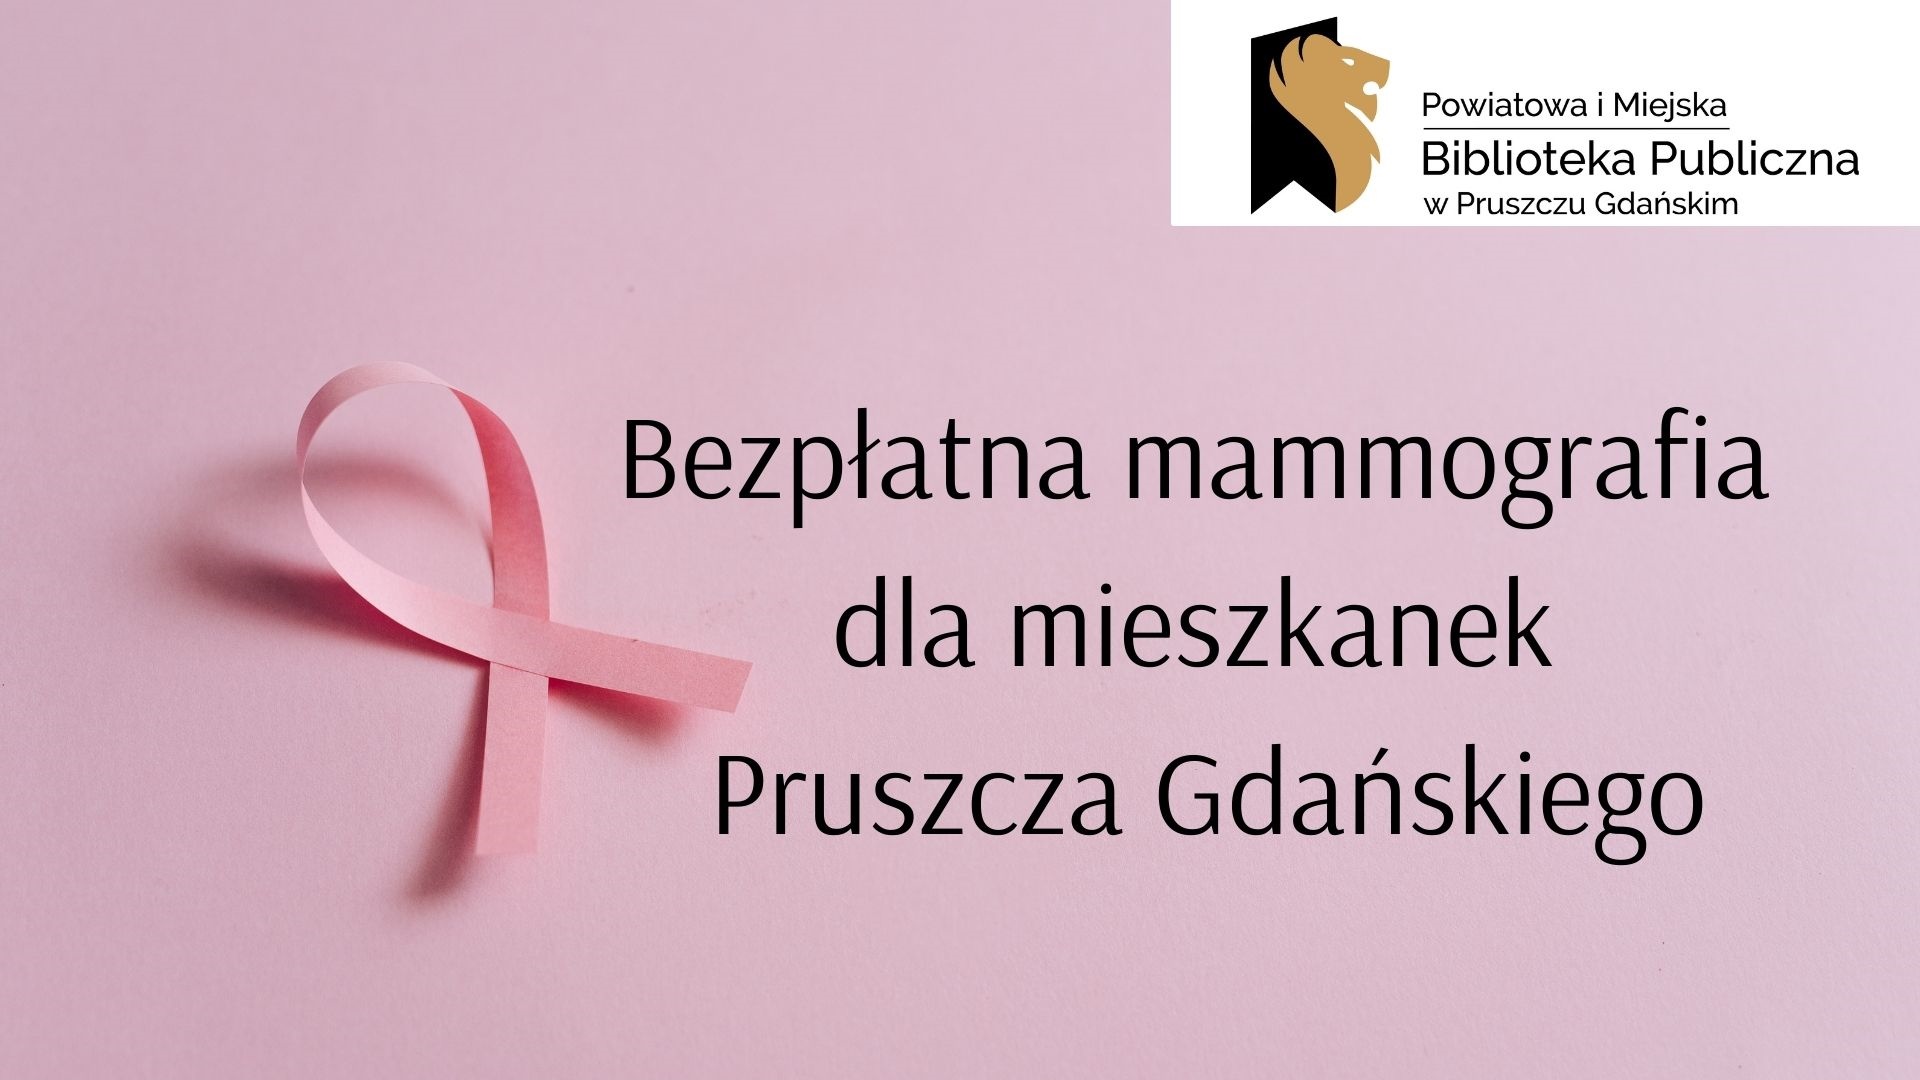 Na różowym tle różowa wstążeczka oraz tekst „Powiatowa Miejska Biblioteka Publiczna w Pruszczu Gdańskim Bezpłatna mammografia dla mieszkanek Pruszcza Gdańskiego”